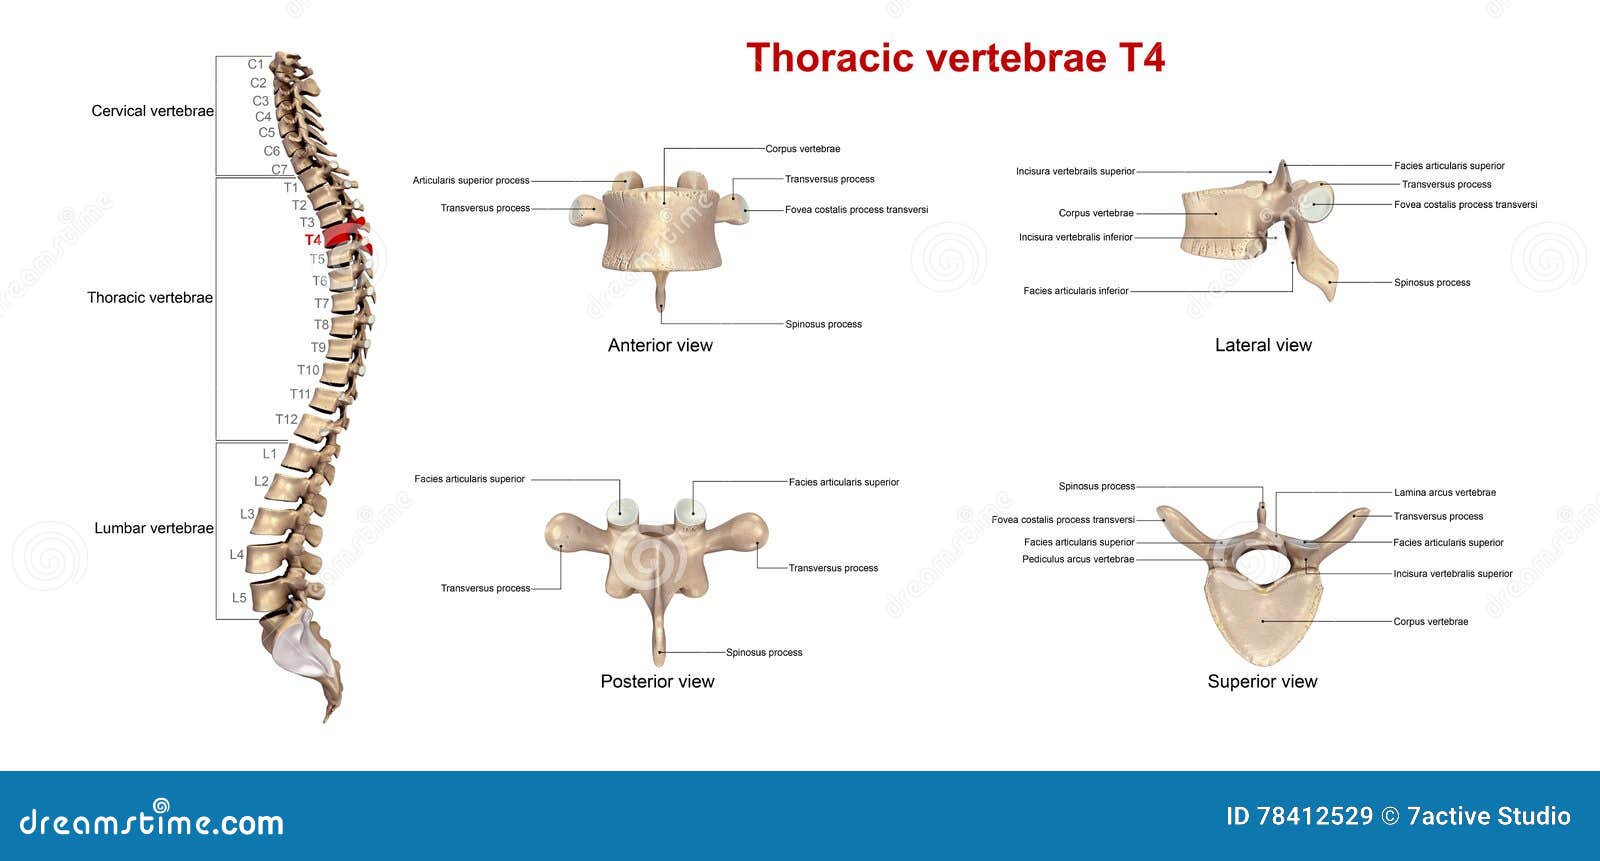 thoracic vertebrae t4